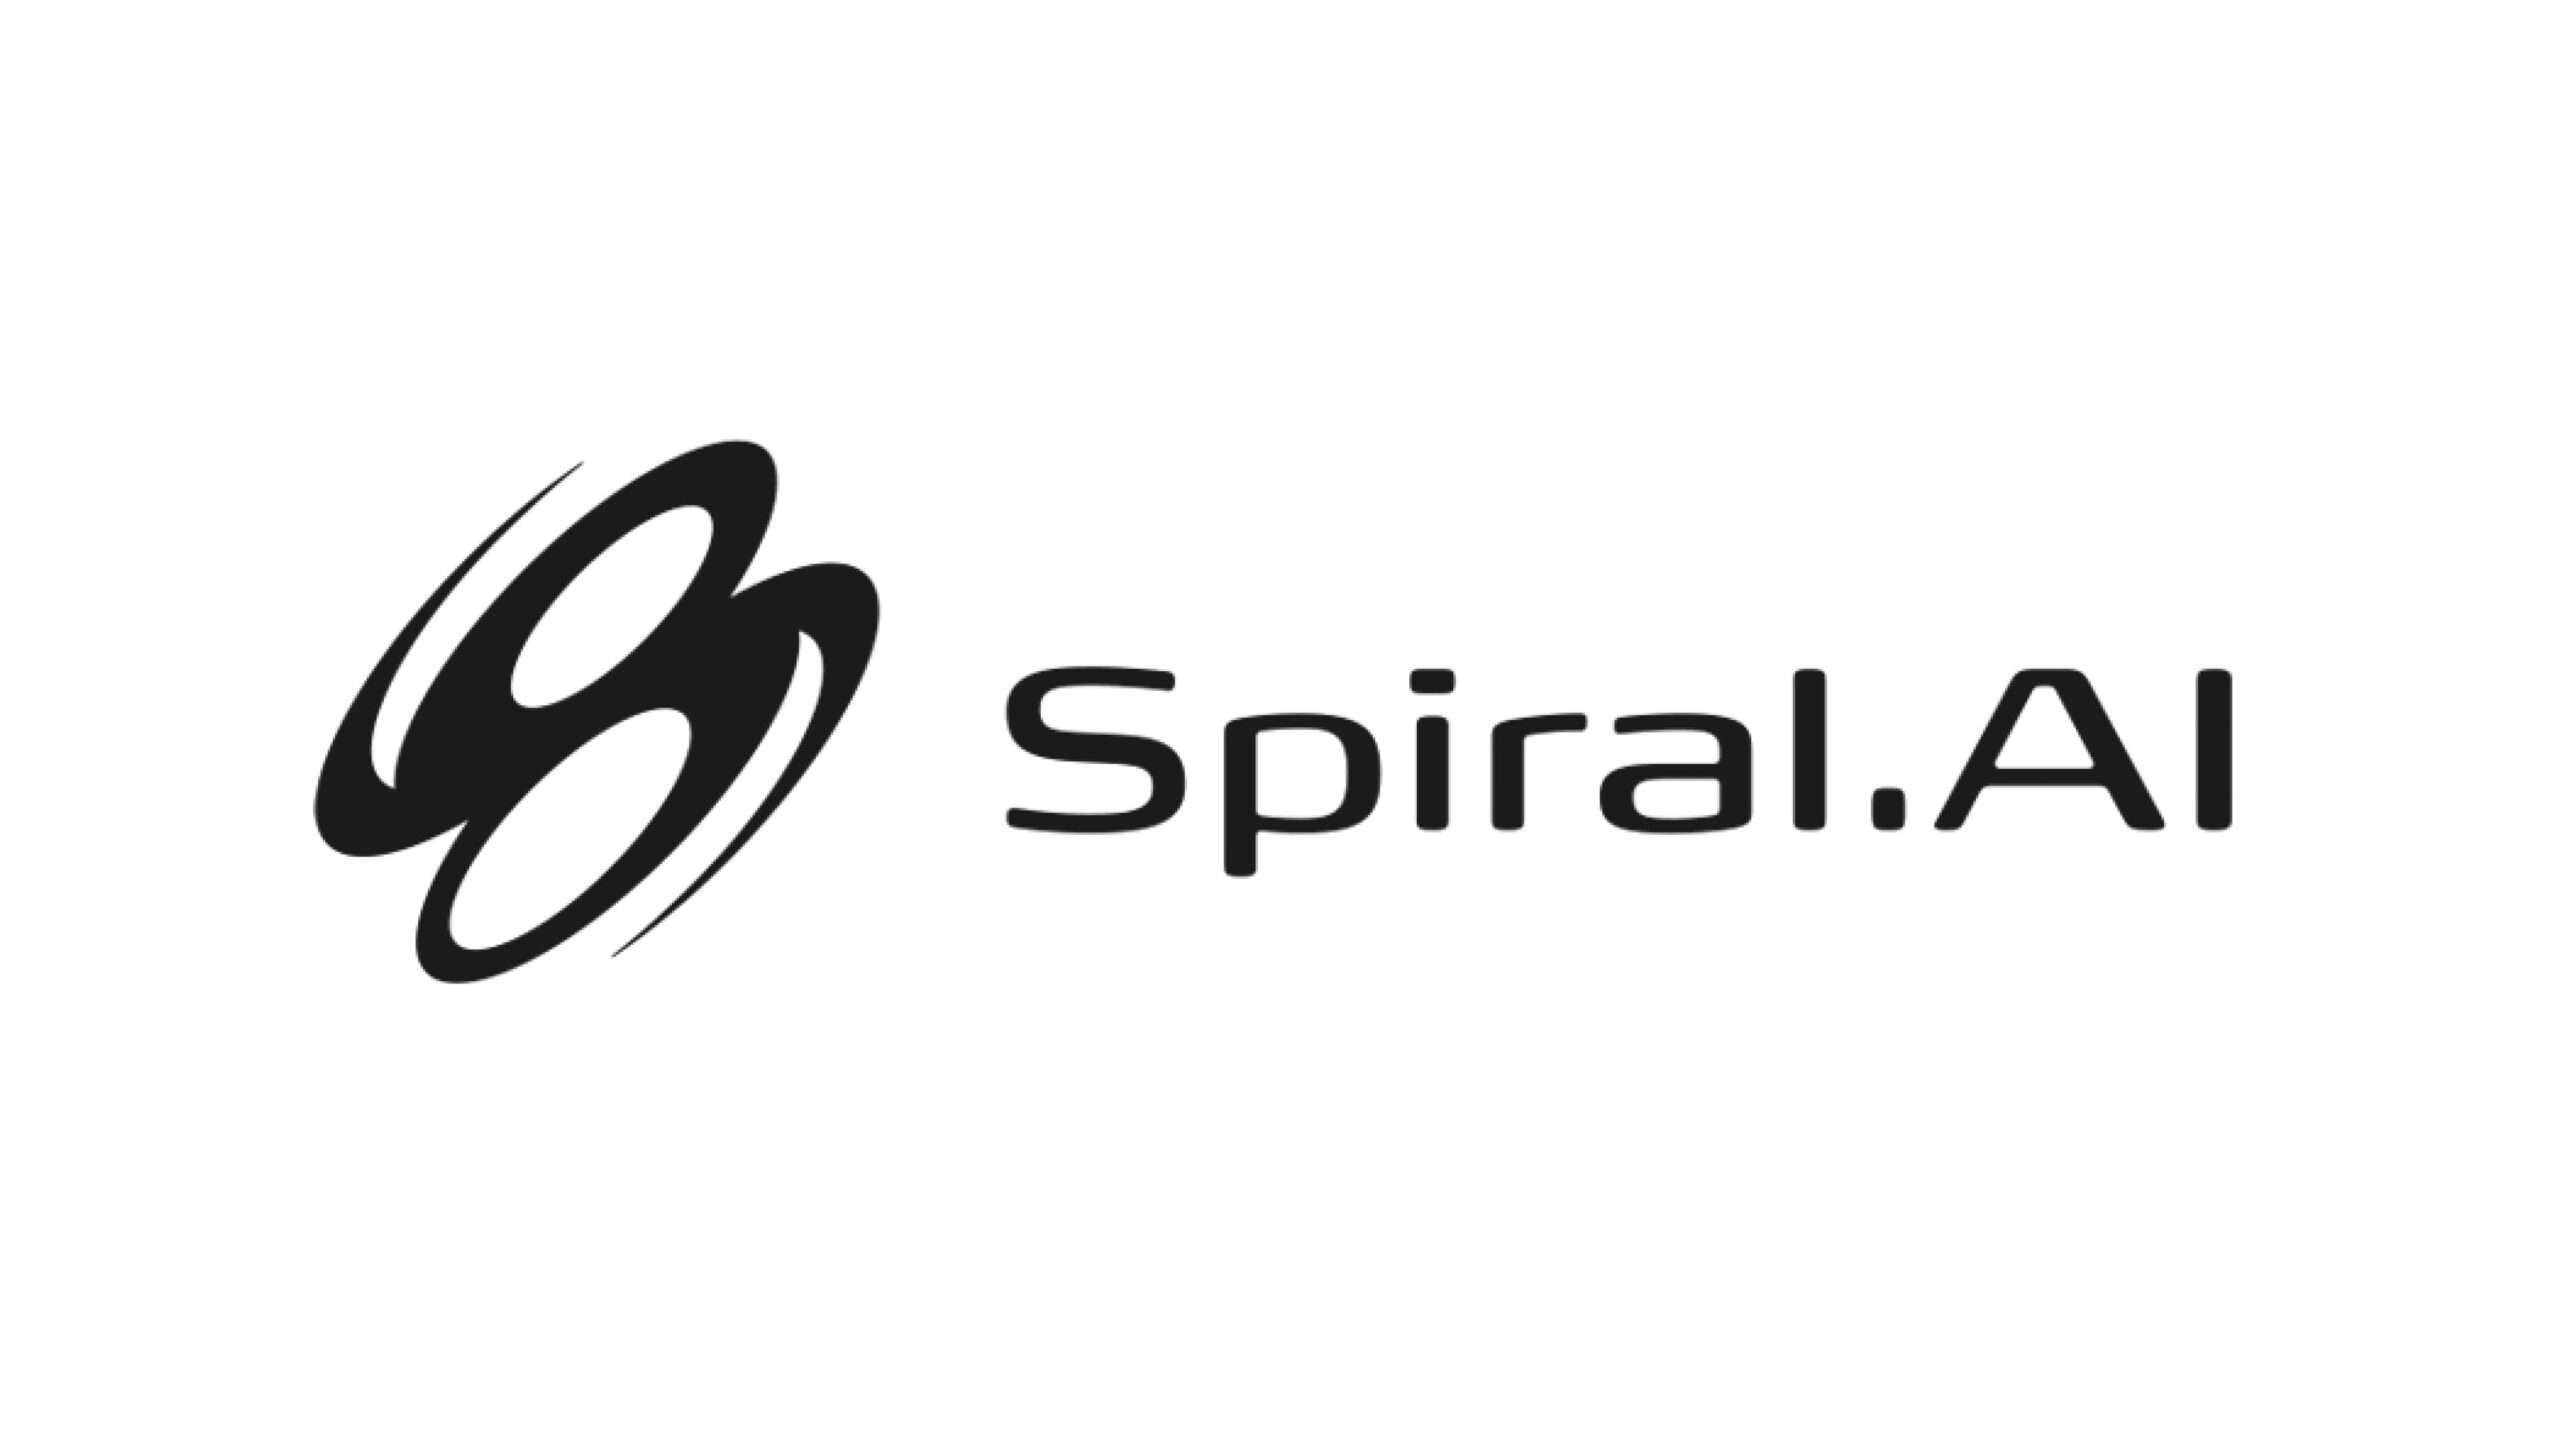 株式会社Spiral.AI、10.6億円の資金調達でシードラウンドをクローズ